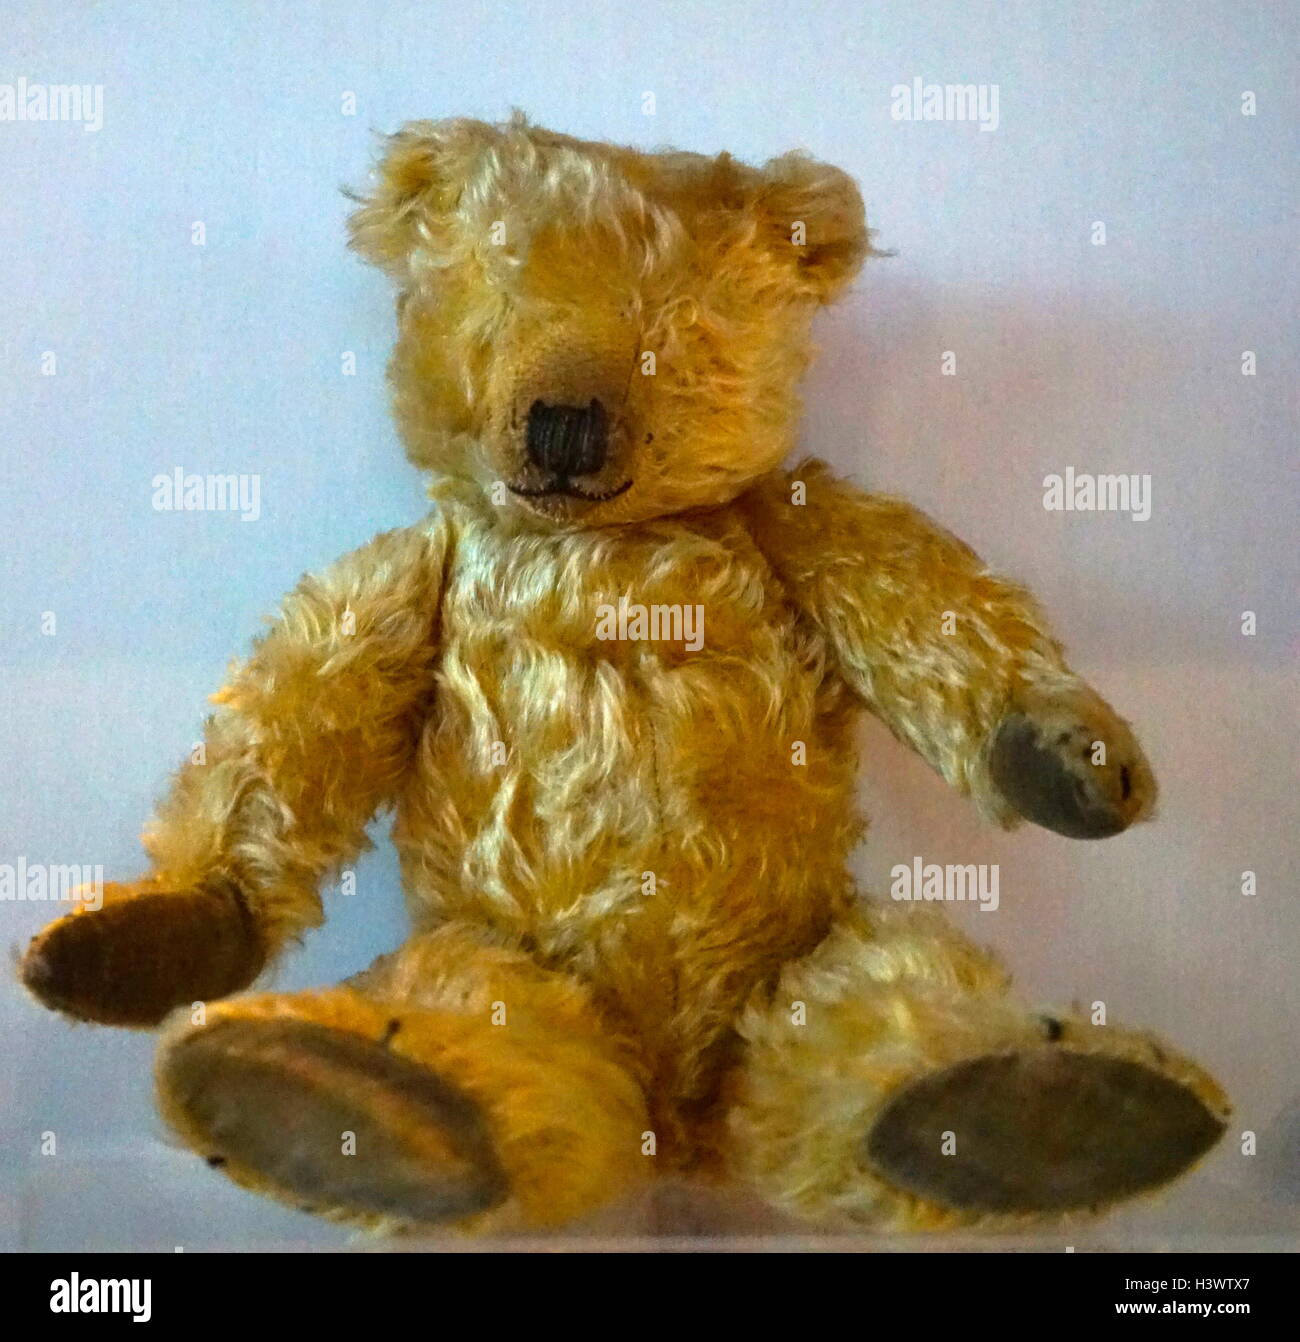 growling teddy bear